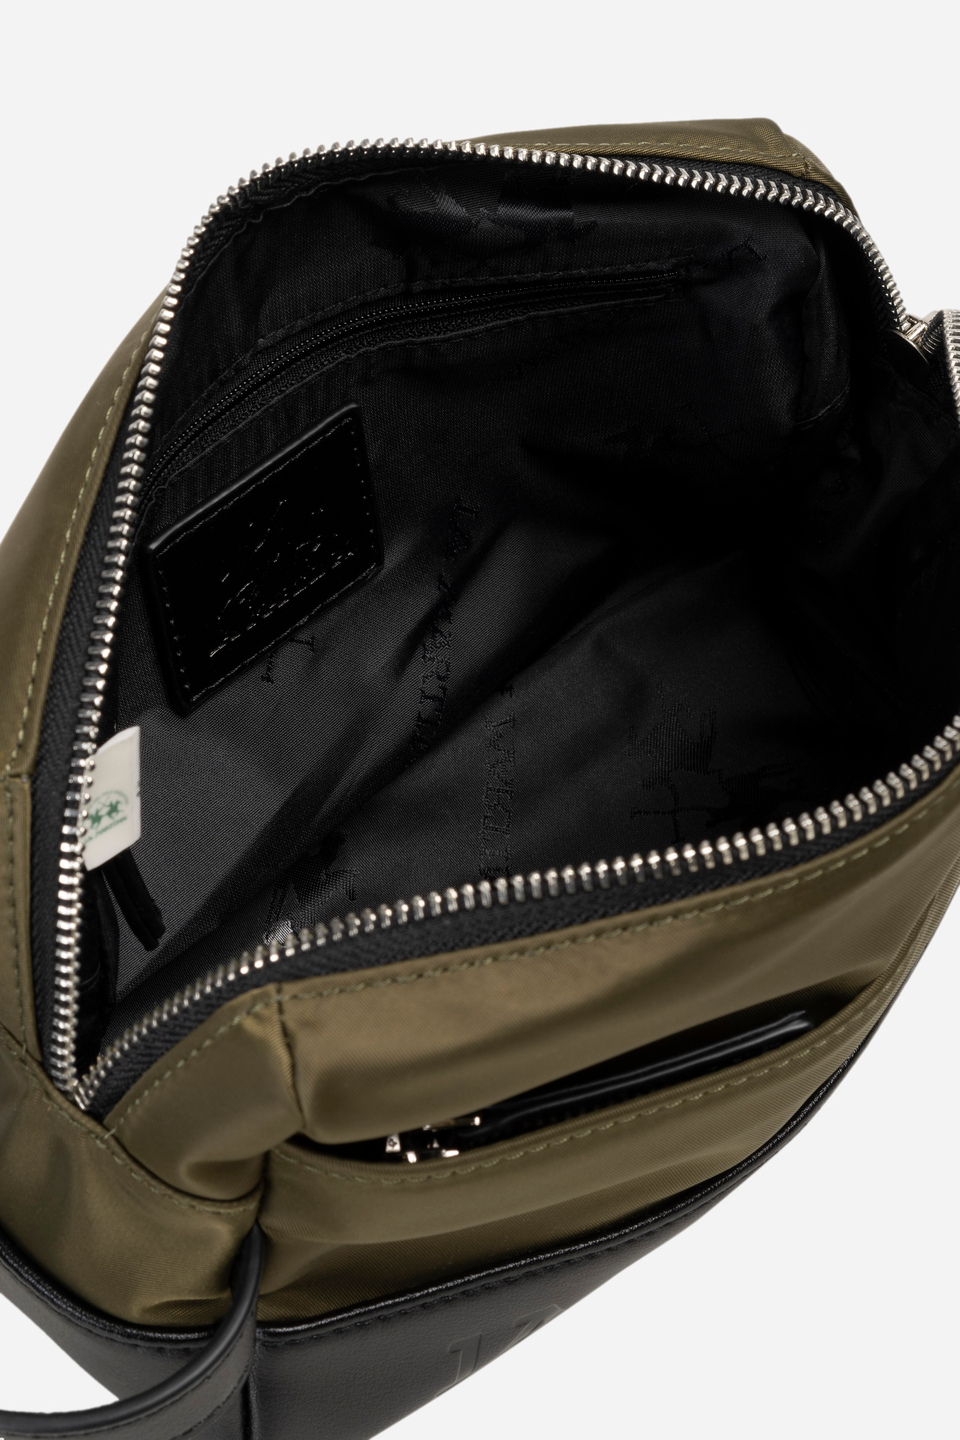 Herren-Clutch-Tasche aus Nylon – Bruno | La Martina - Official Online Shop